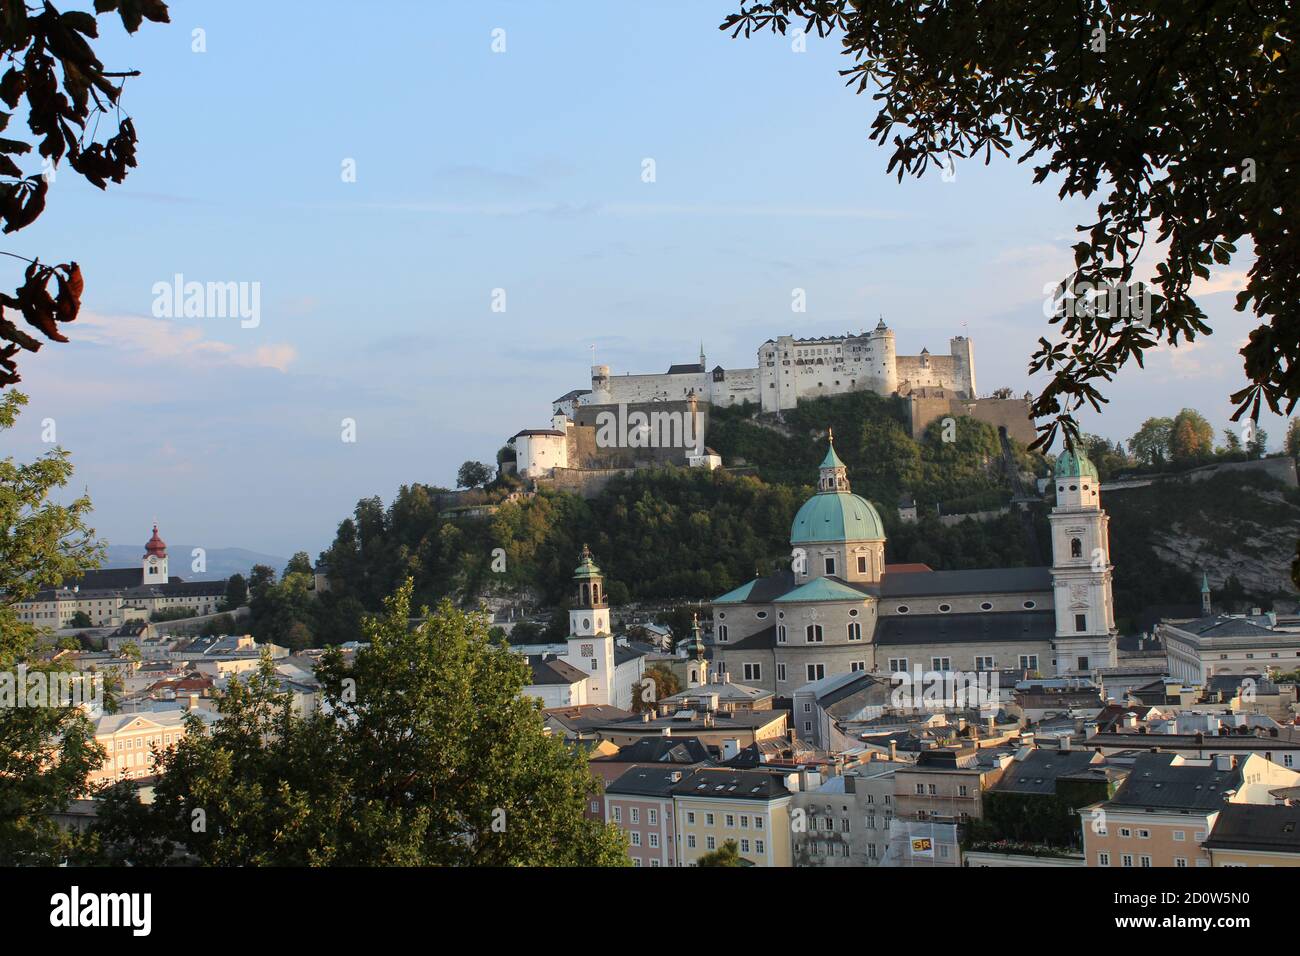 View on the Festung Hohensalzburg through trees, Salzburg, Austria Stock Photo